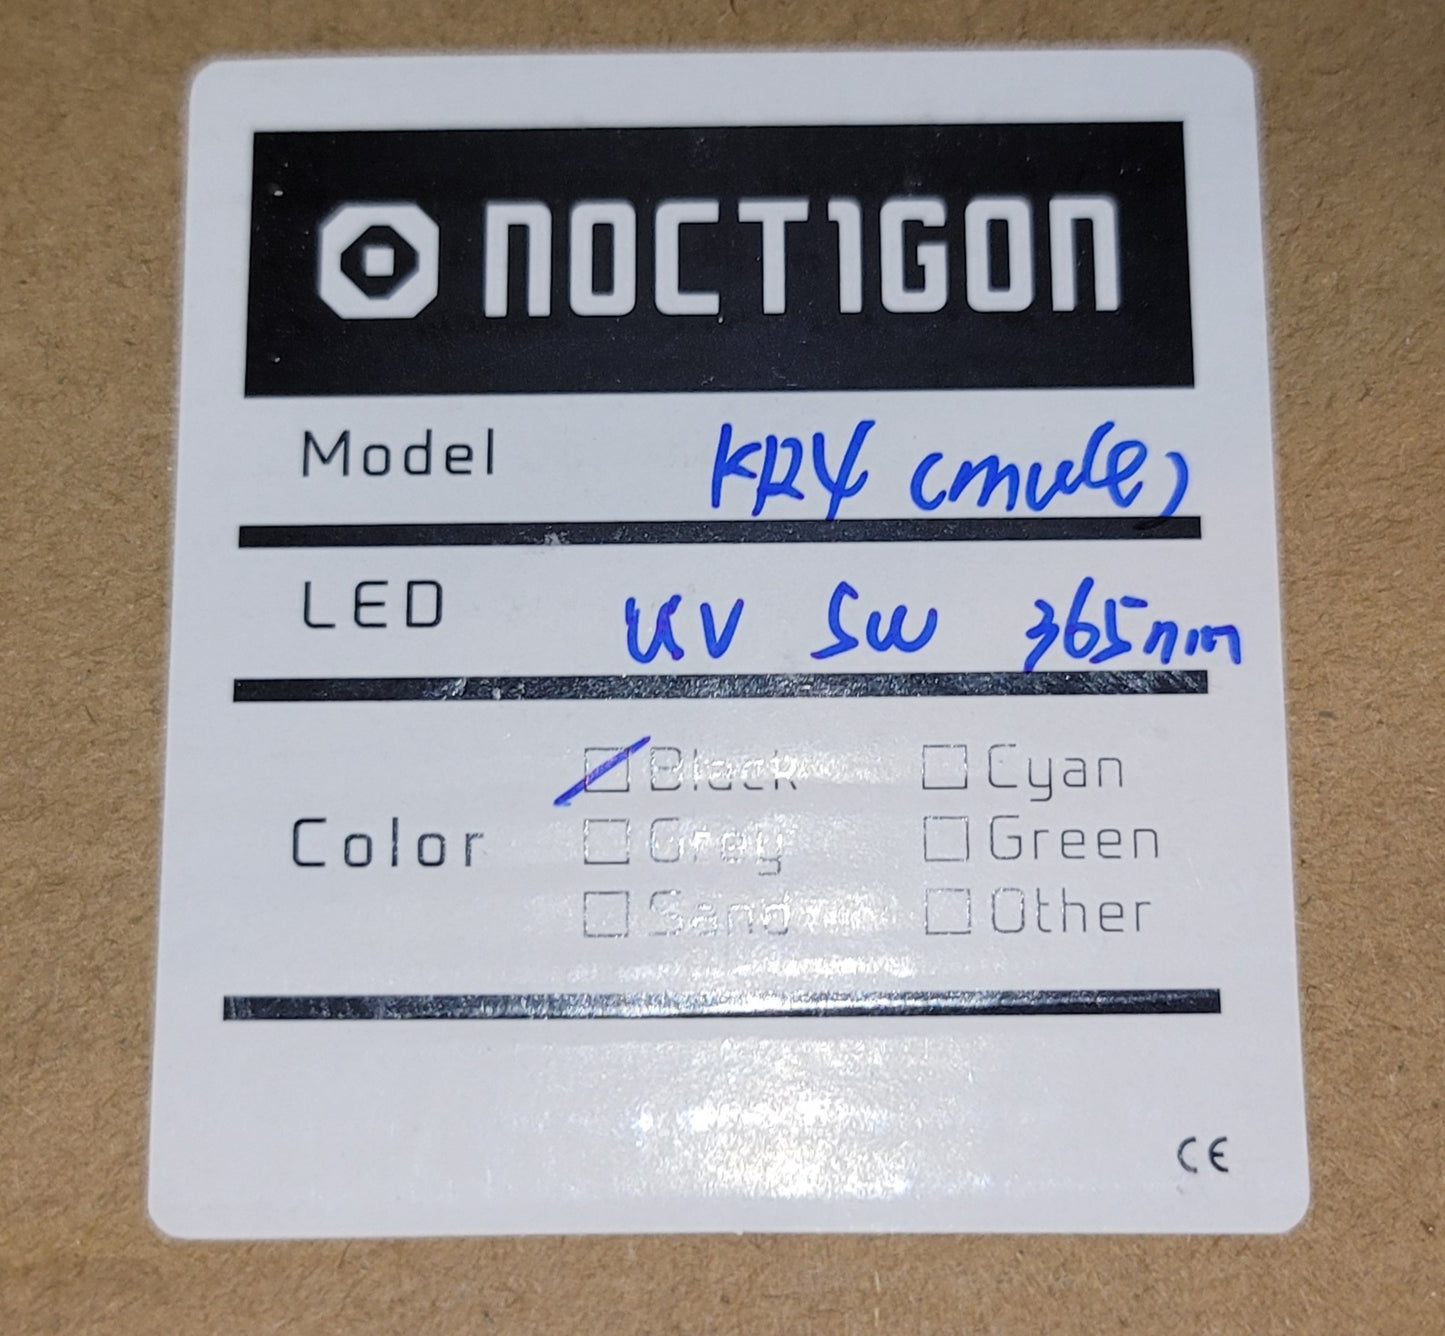 NOCTIGON KR4 8 X MULE 365NM UV LED FLASHLIGHT